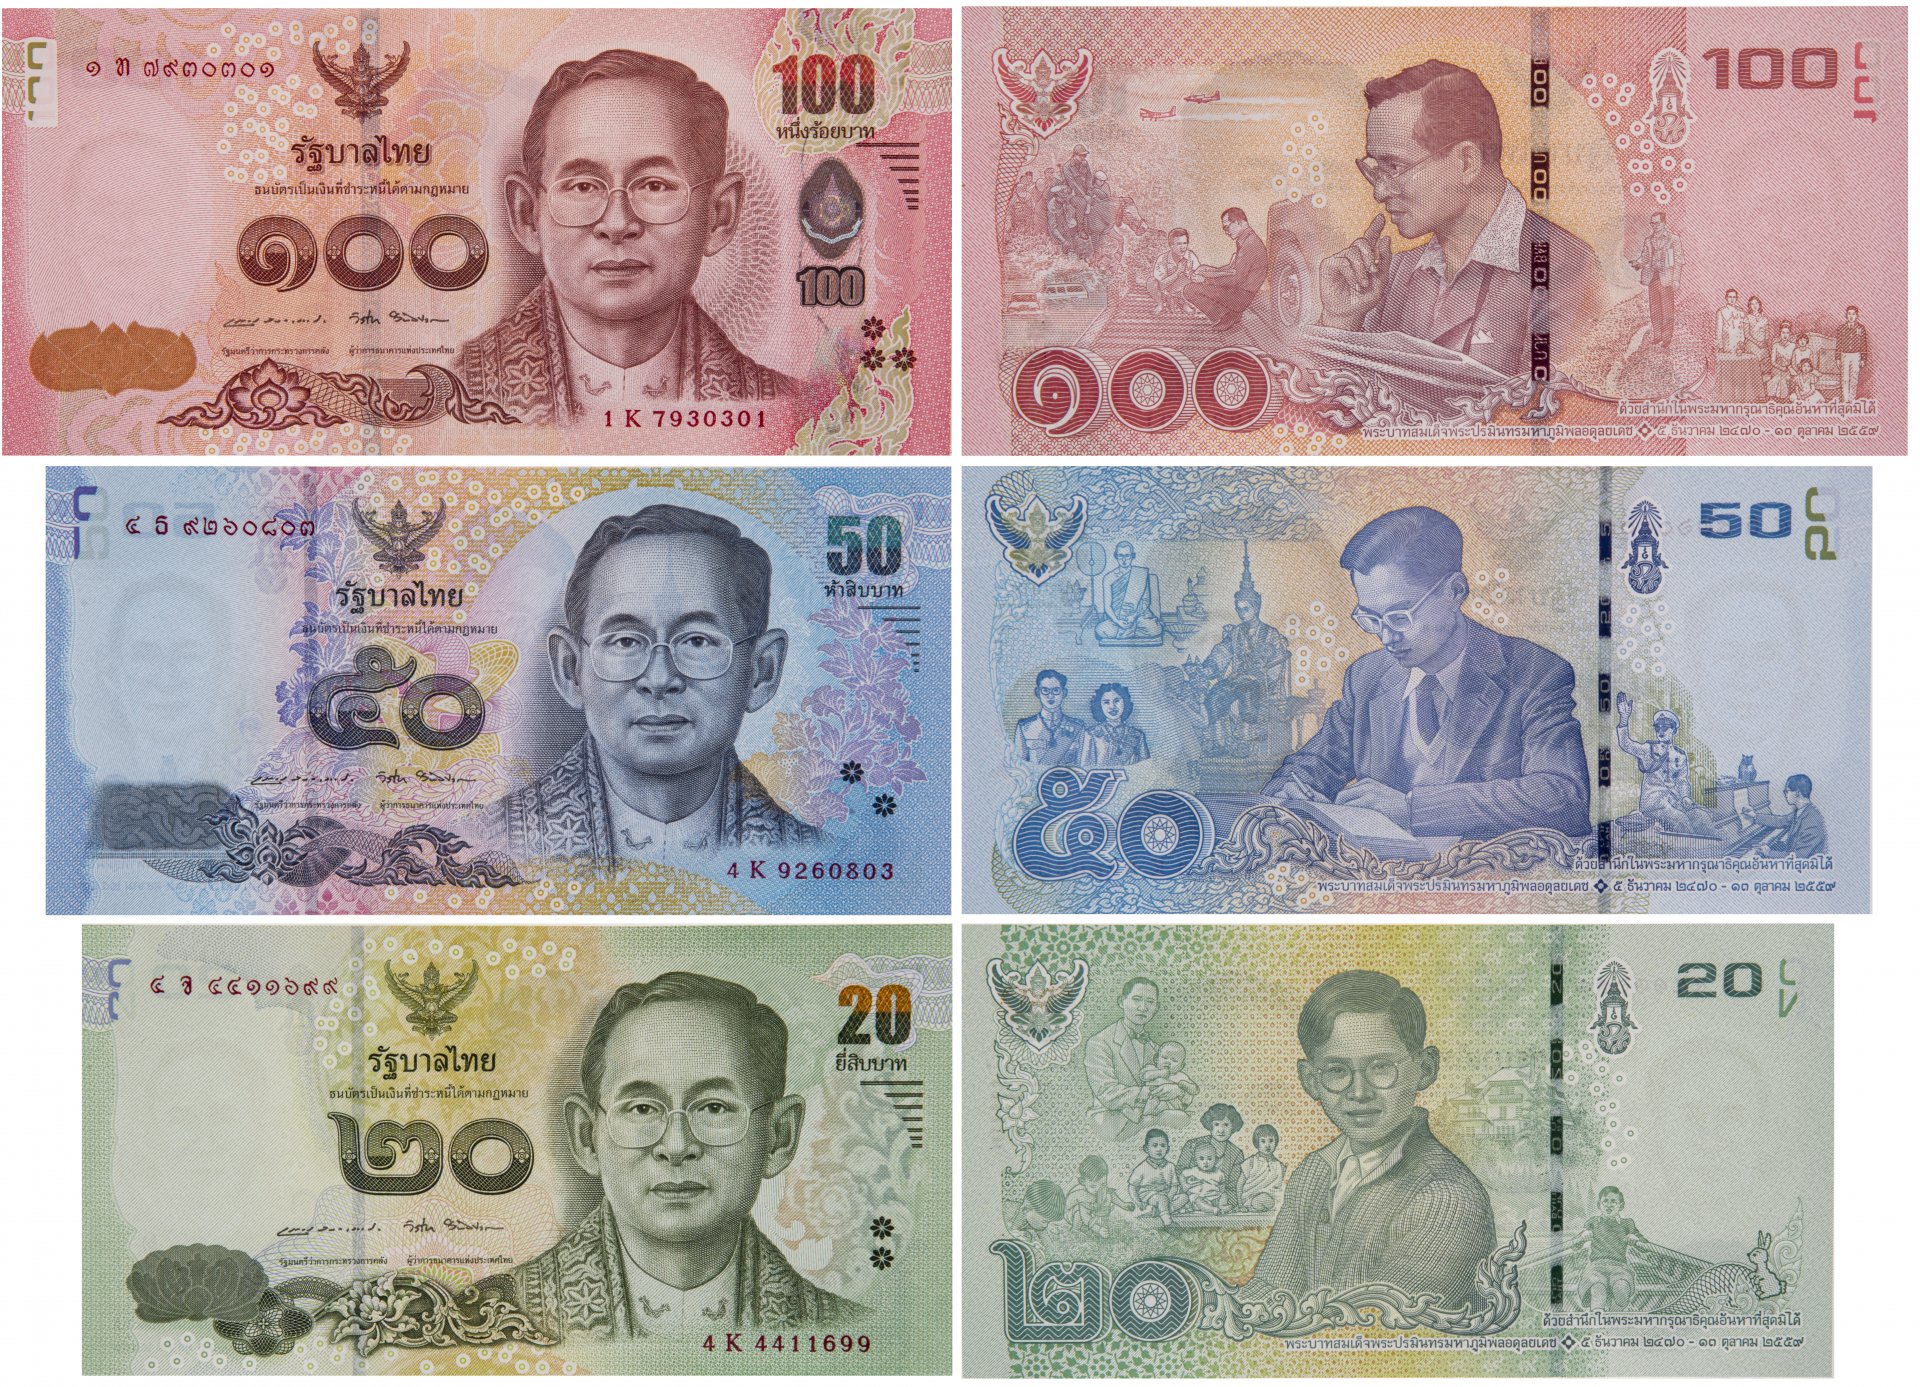 50000 батов в рублях. Купюра Тайланда 20. Банкноты Таиланда 20 бат. Банкноты Тайланда 100 бат. Купюра 100 бат Таиланд.